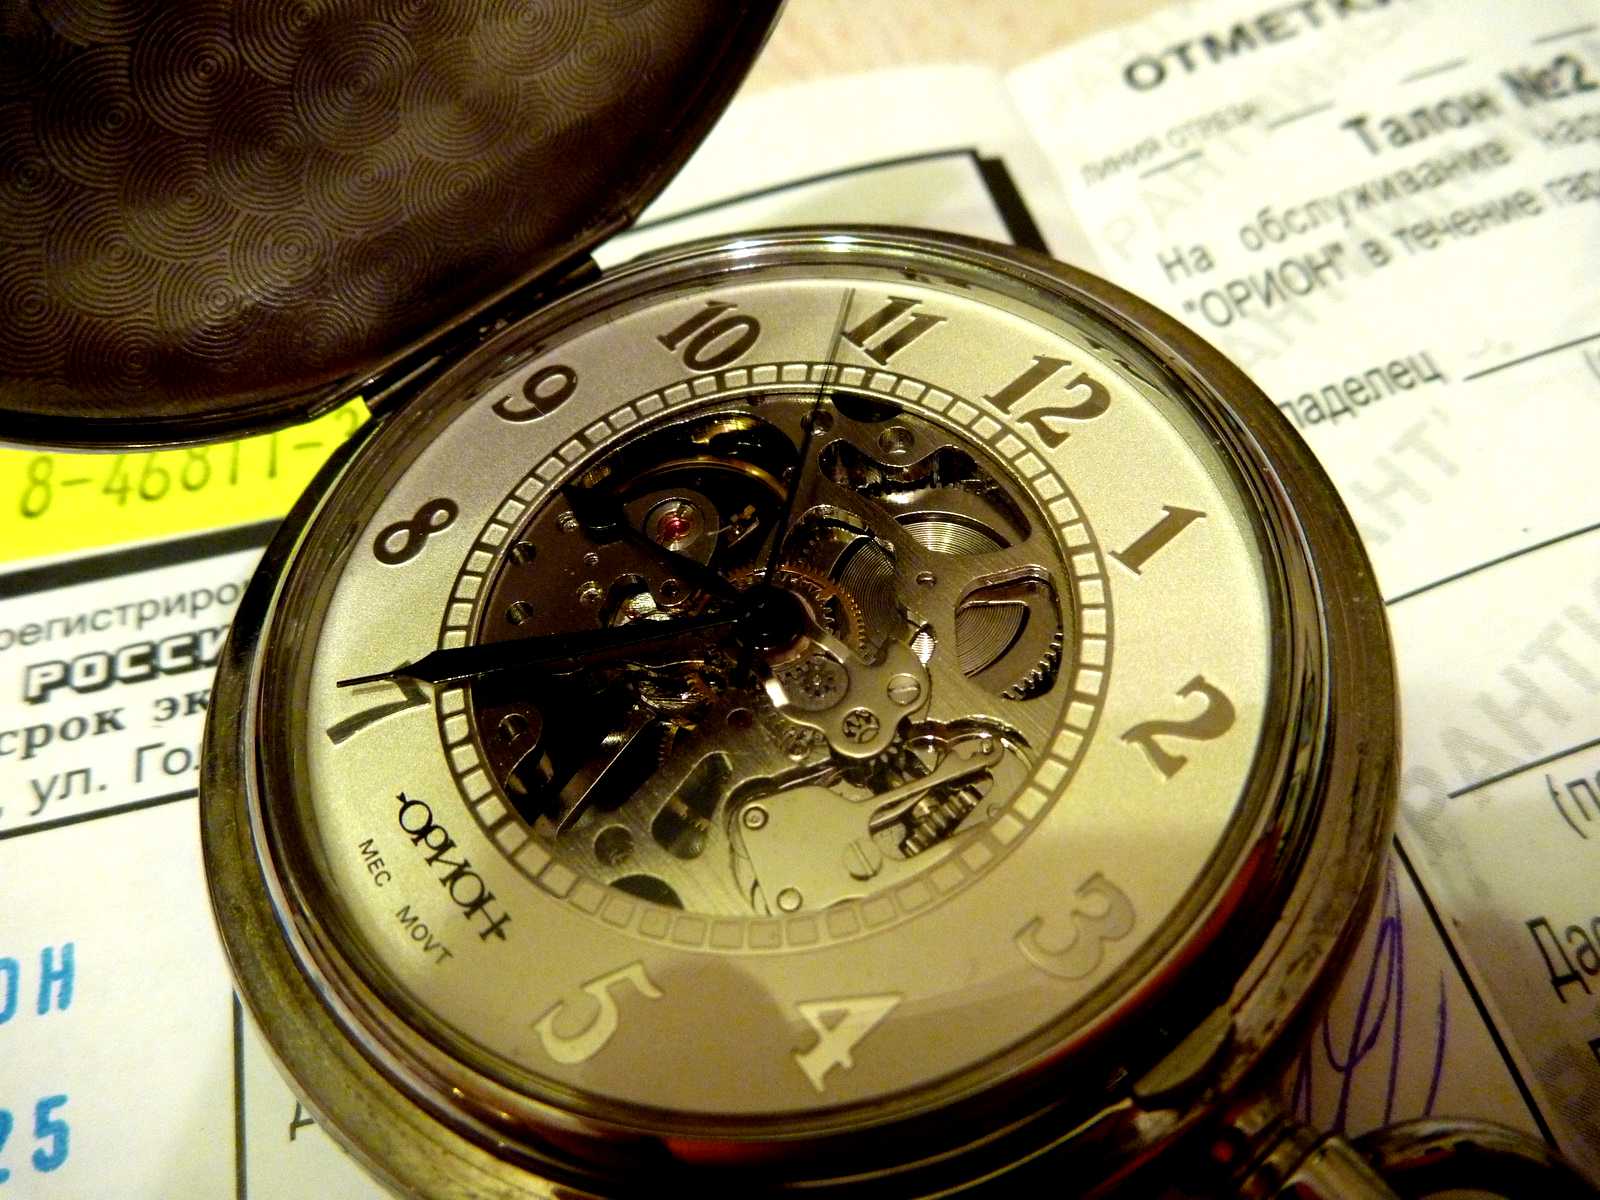 Часы Орион скелетон. Карманные часы Орион скелетон. Орион часы мужские карманные. Часы Орион скелетон 2002.